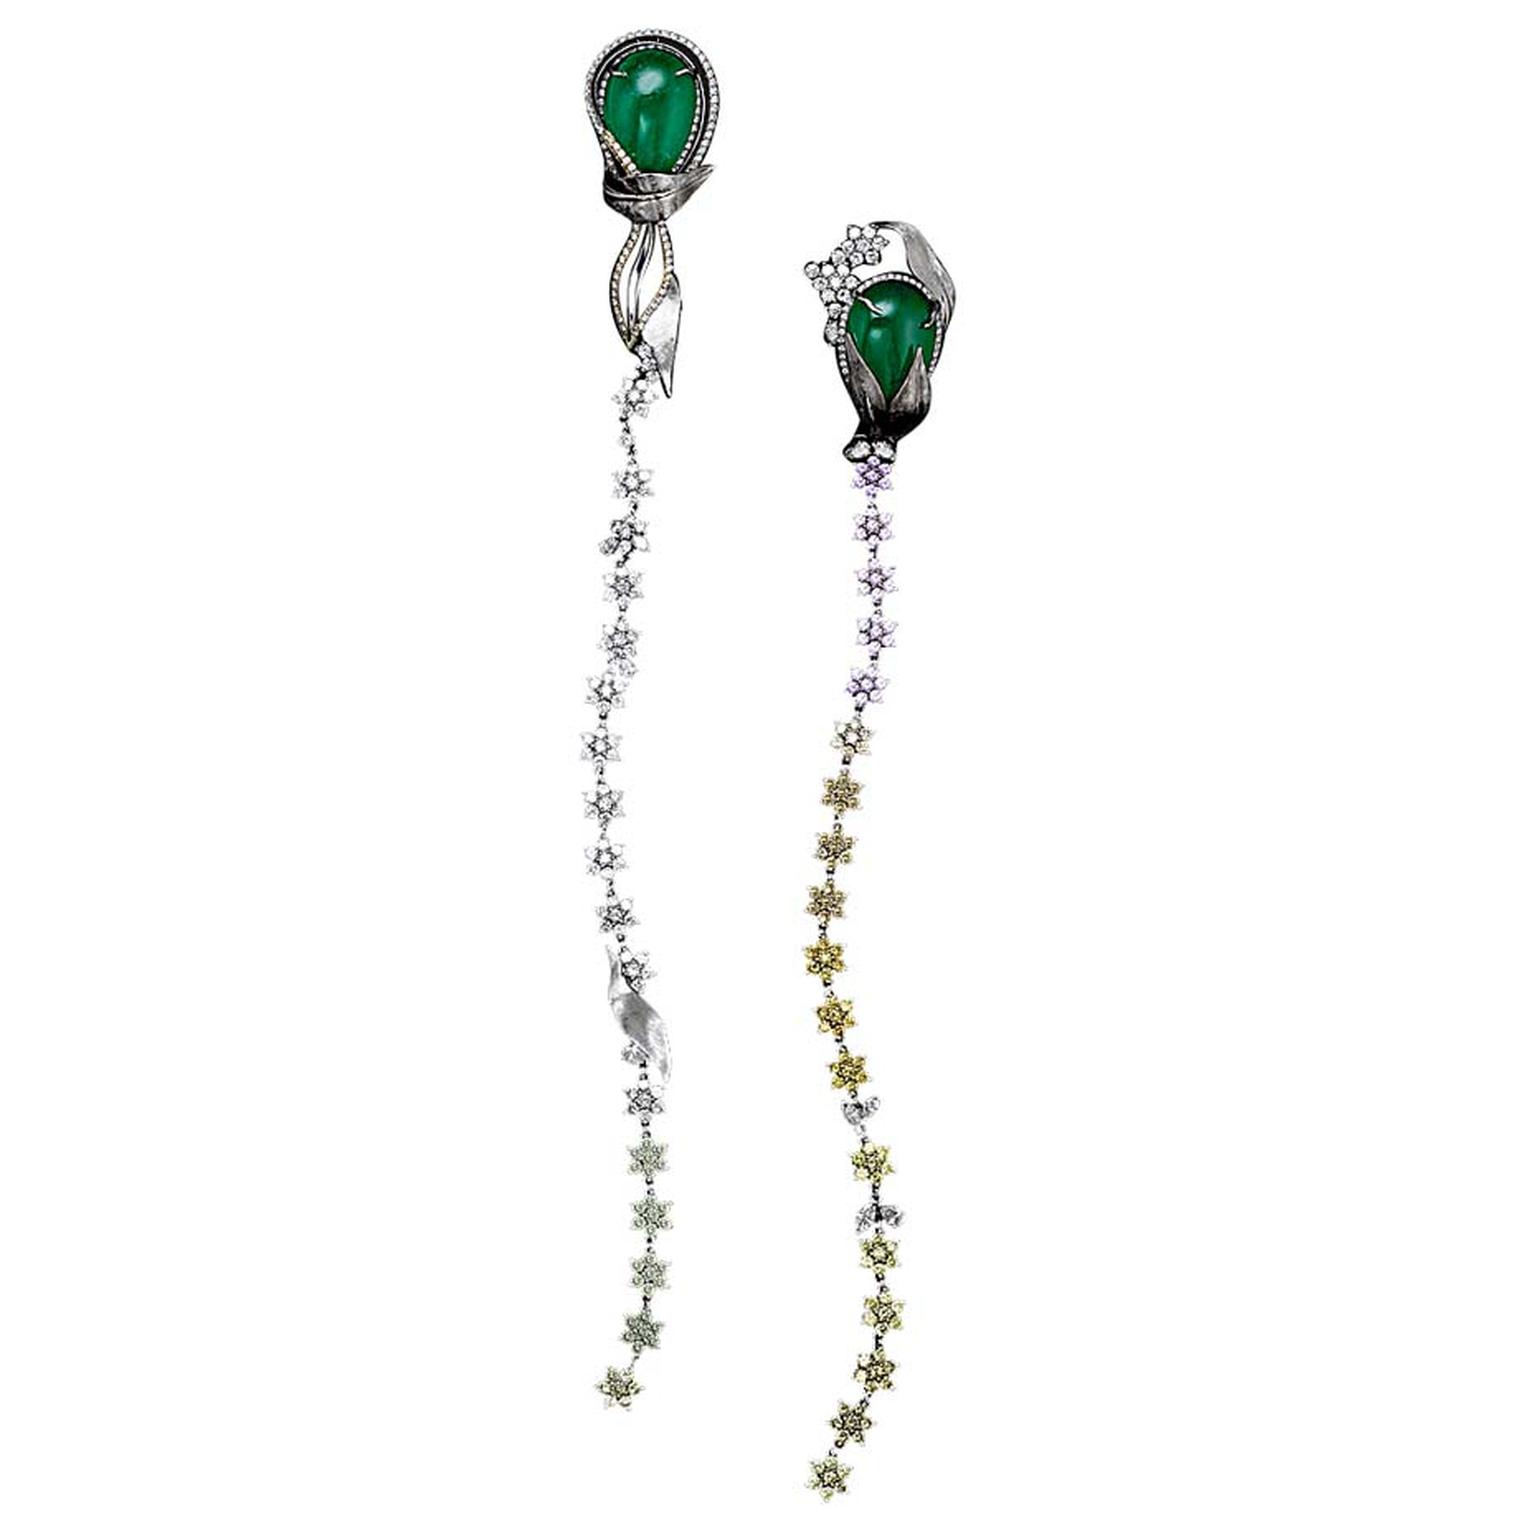 Alexandra Mor emerald and diamond Flower earrings.